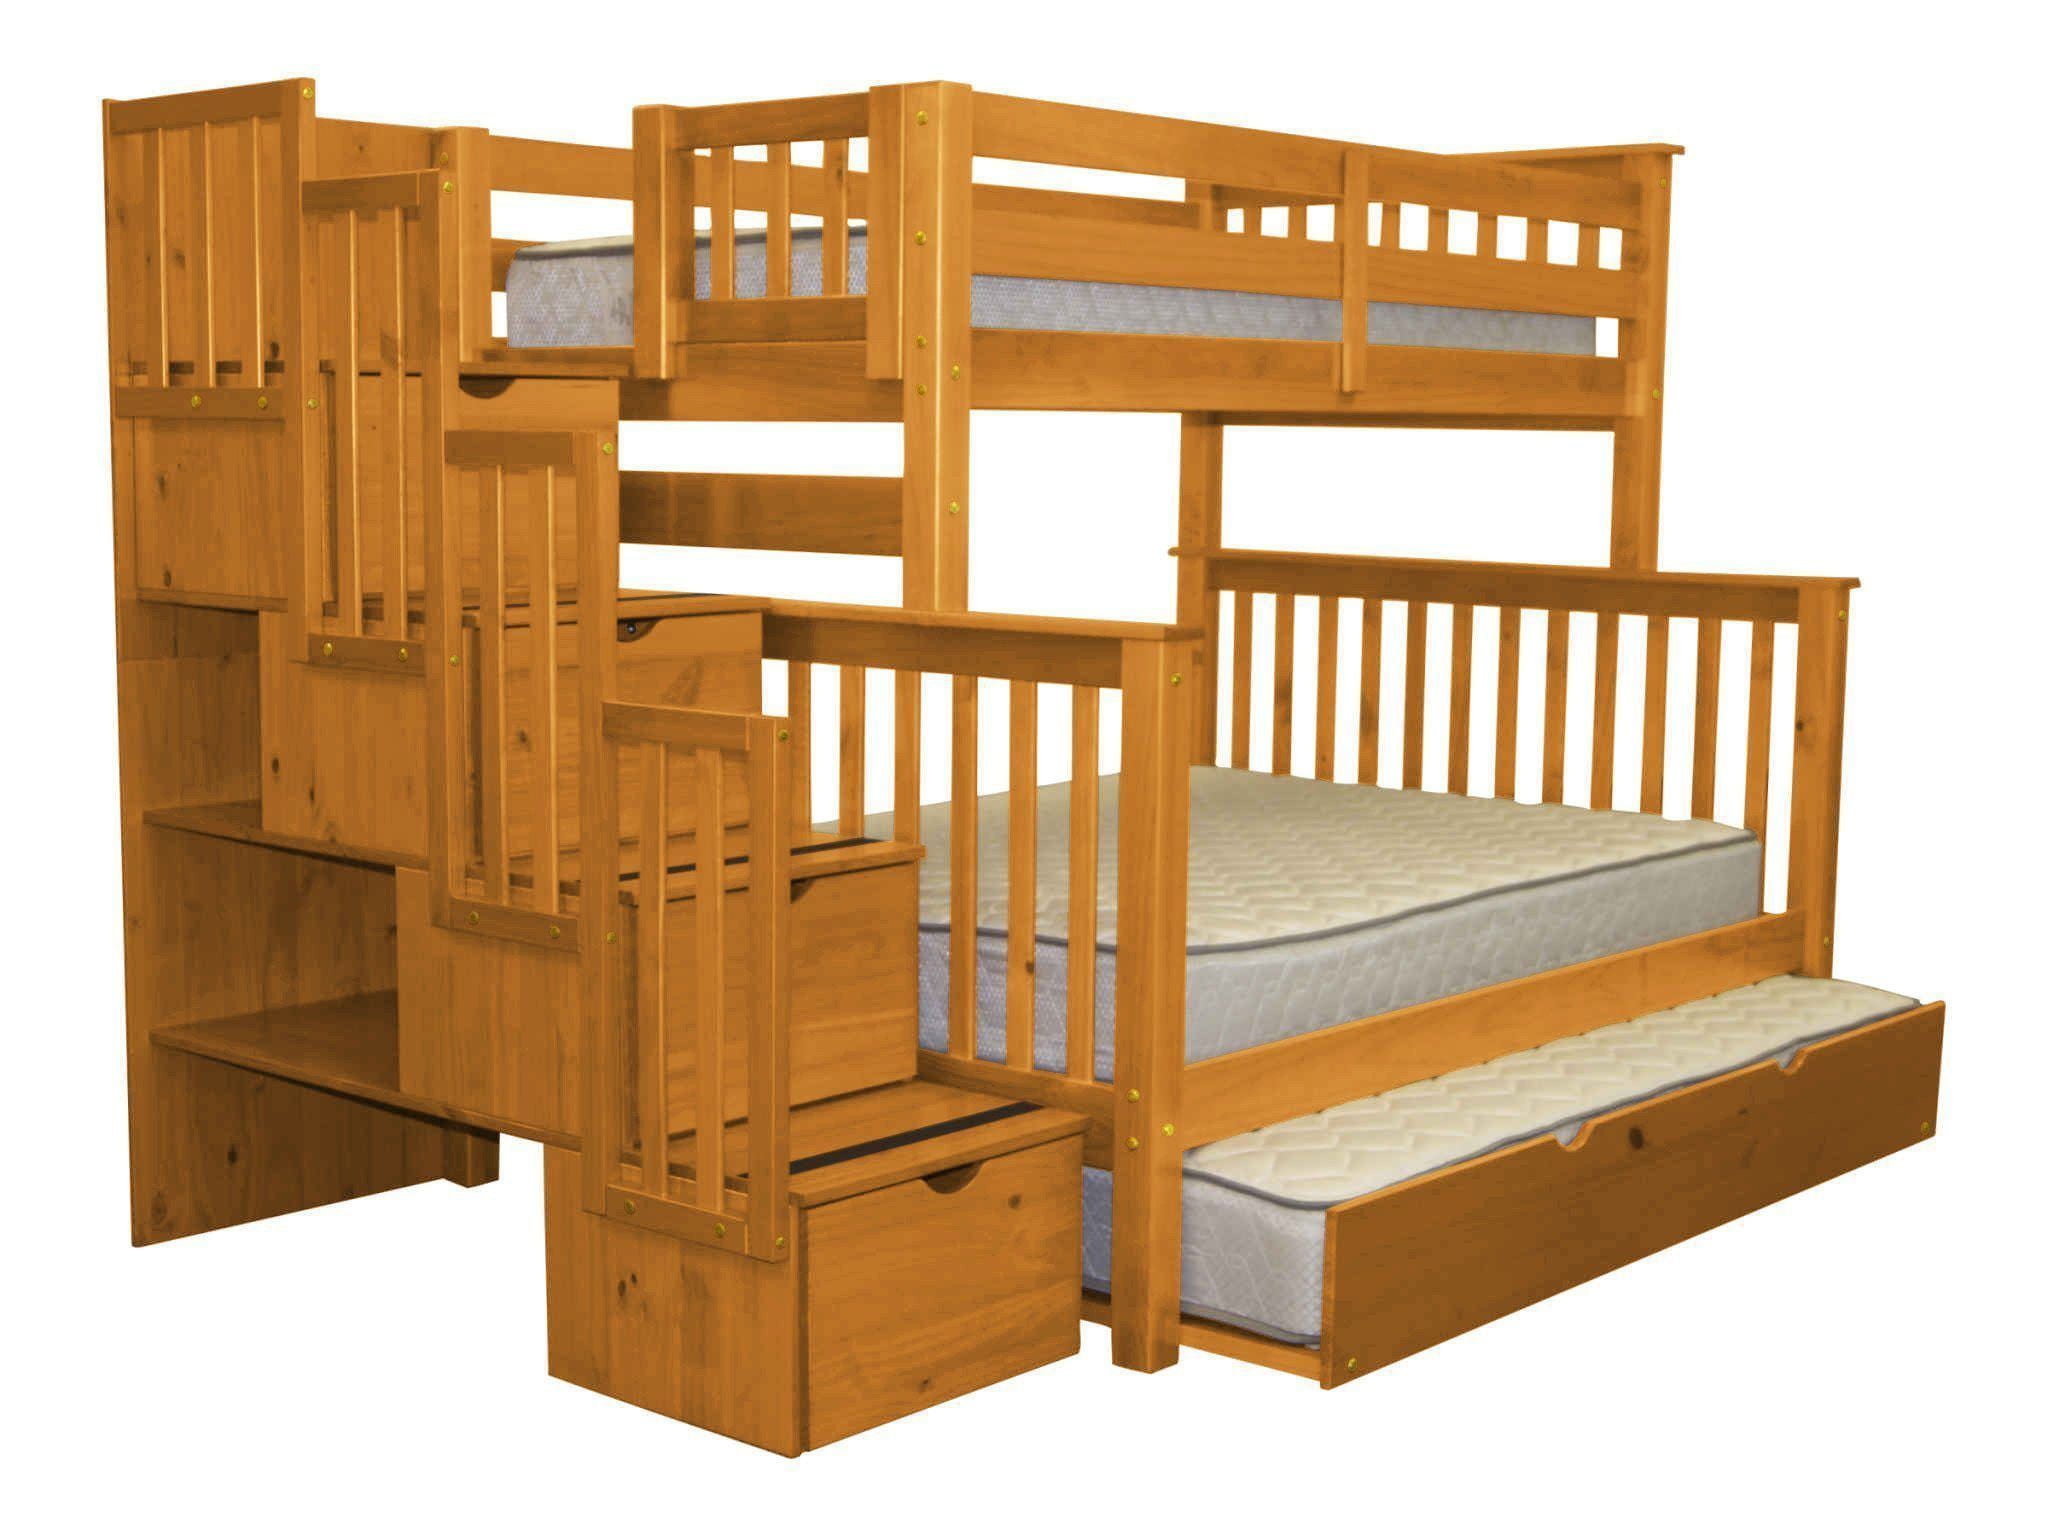 Bedz King Stairway Bunk Beds Twin Over, Bedz King Twin Over Twin Bunk Bed With Trundle